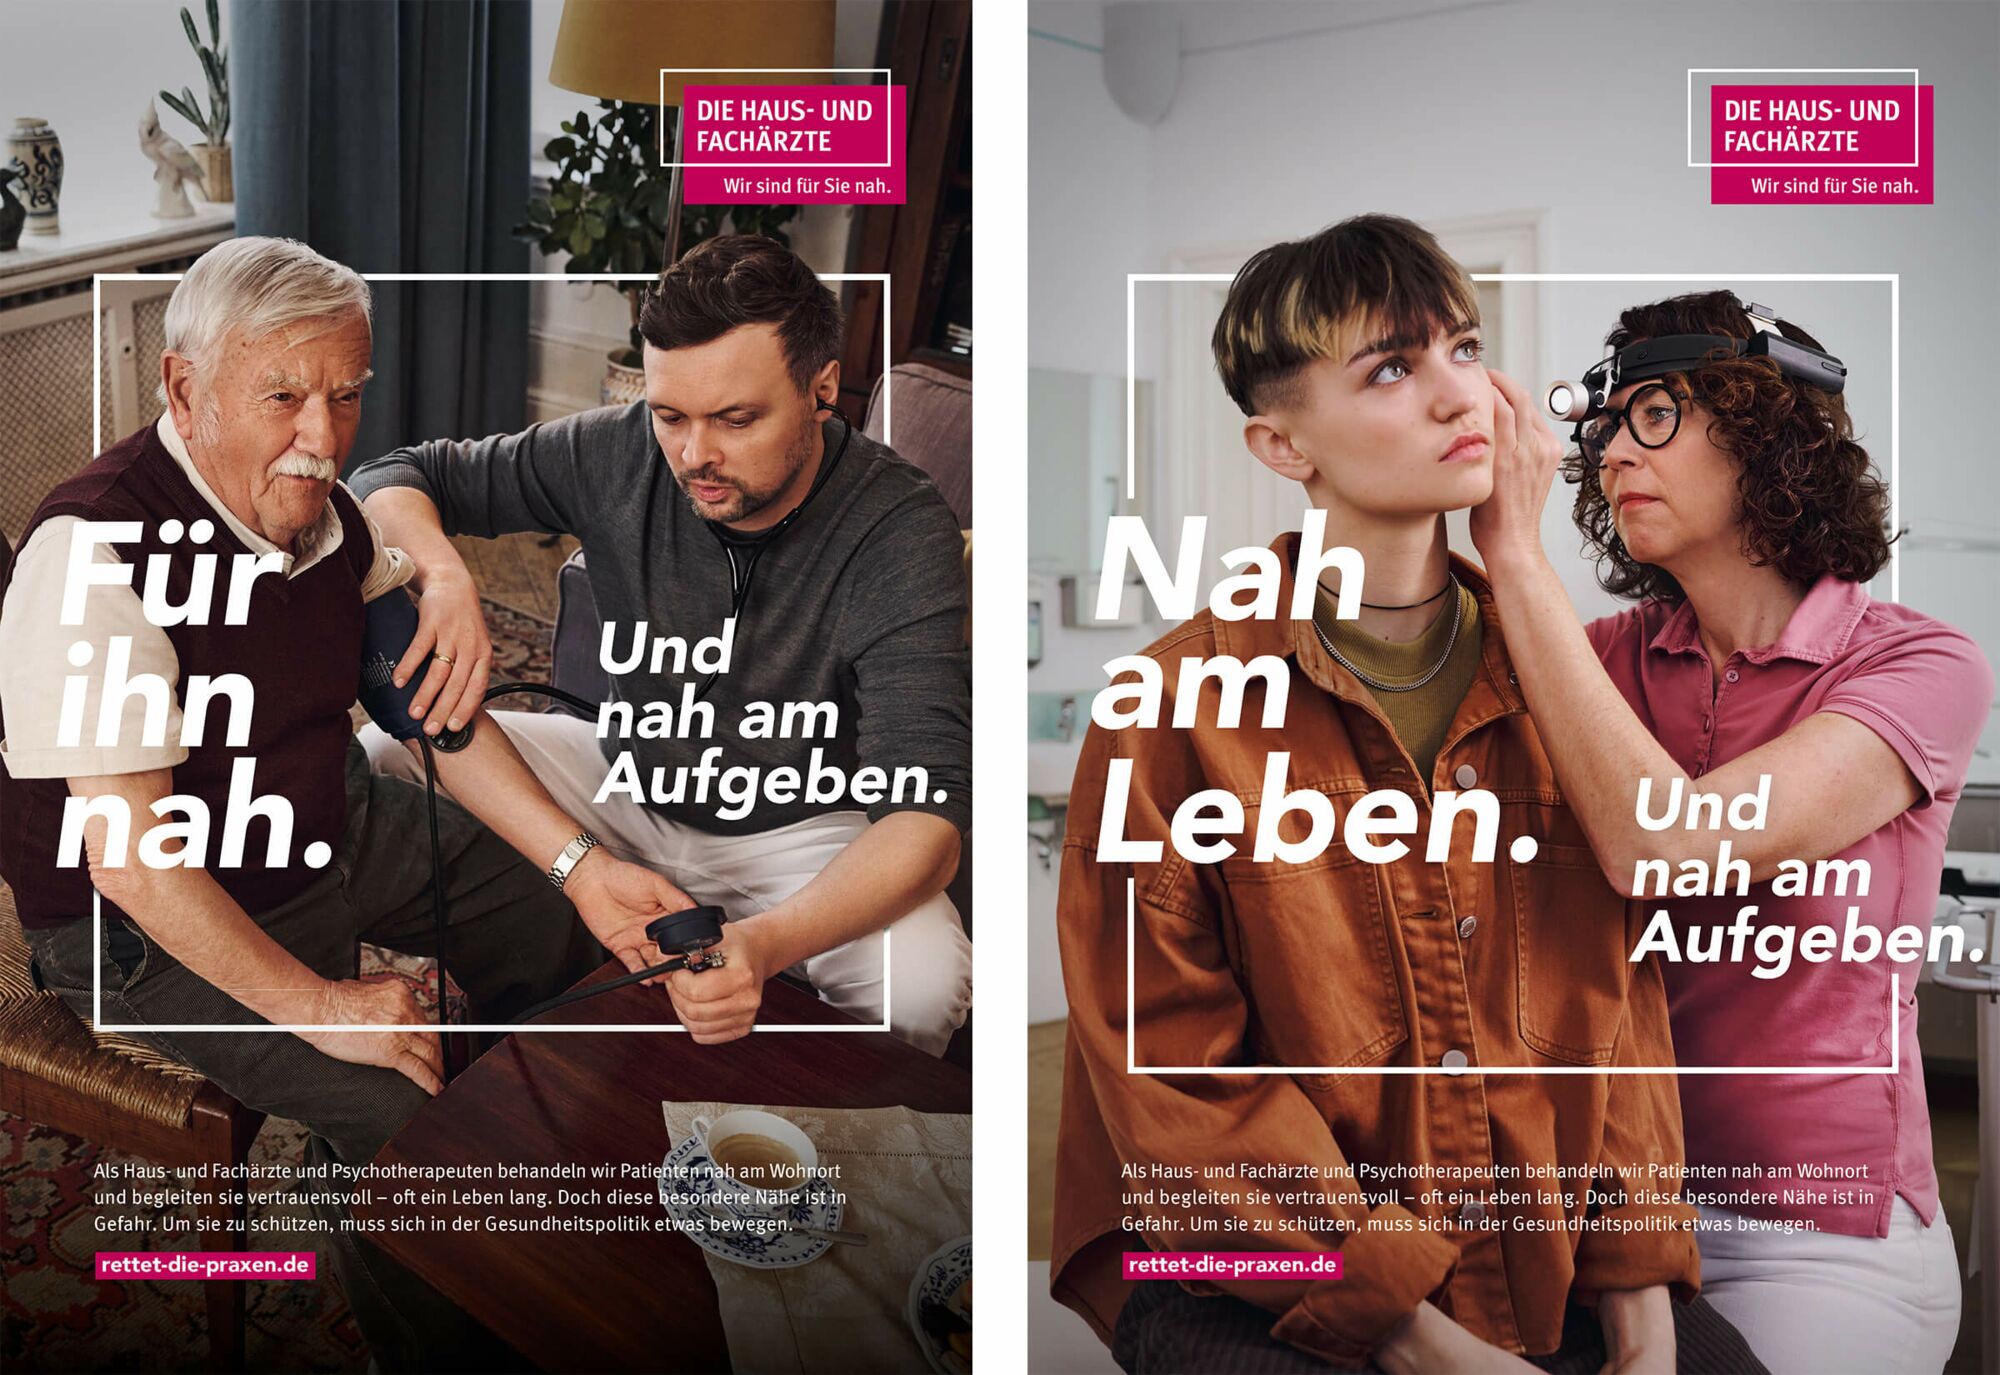 Zwei Anzeigen-Motive aus der KBV Kampagne "Wir sind für sie nah."